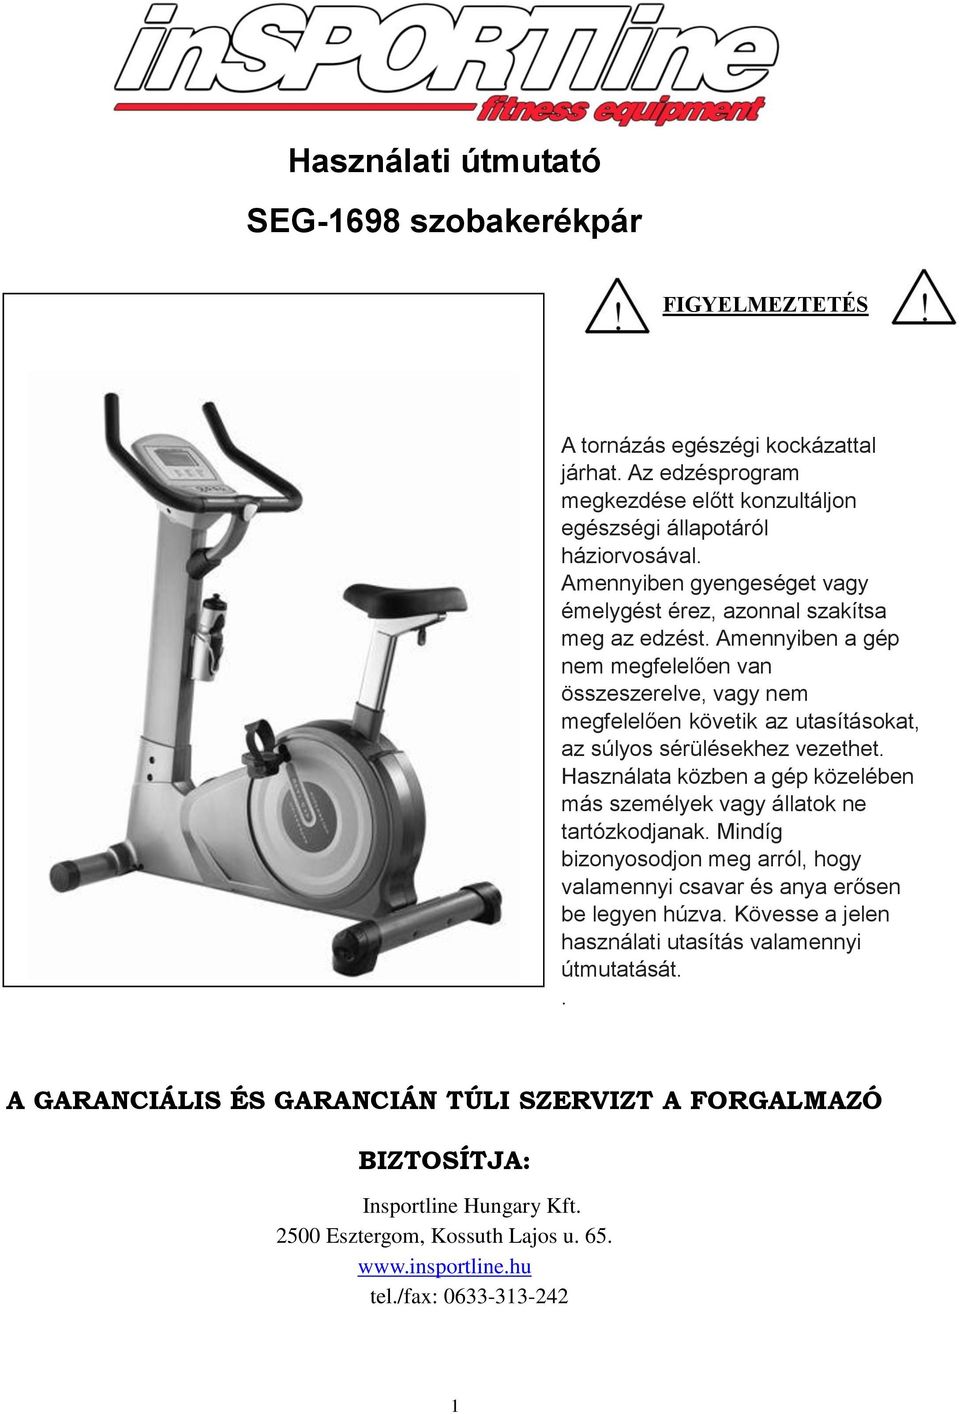 Használati útmutató SEG-1698 szobakerékpár - PDF Free Download